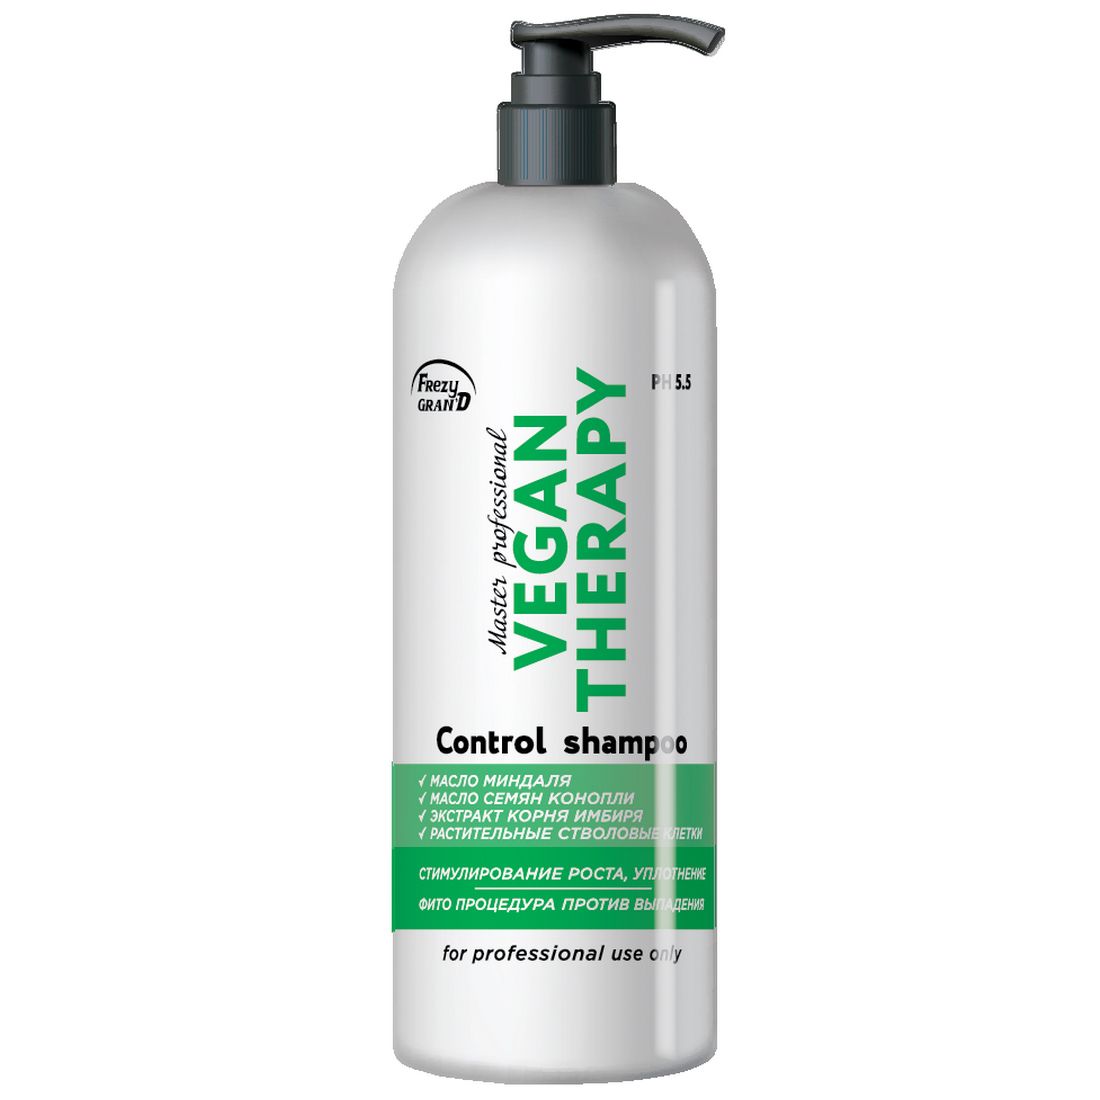 Шампунь для роста волос Frezy Gran'd Vegan Therapy PH 5.5, 1 л el 8 de gran via